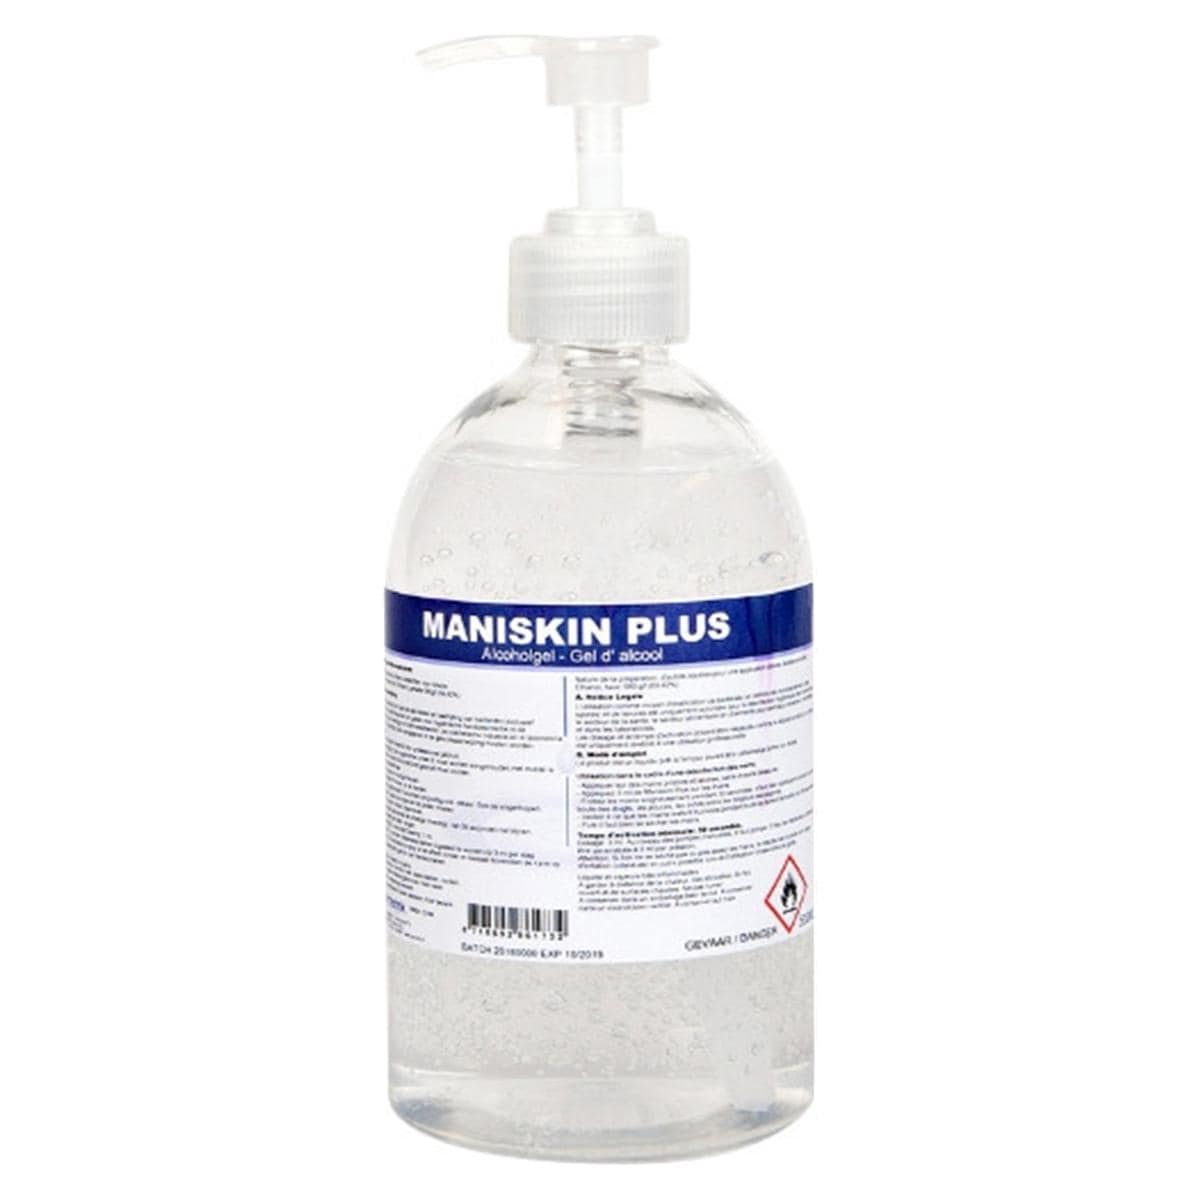 Maniskin Plus - Fles, 250 ml